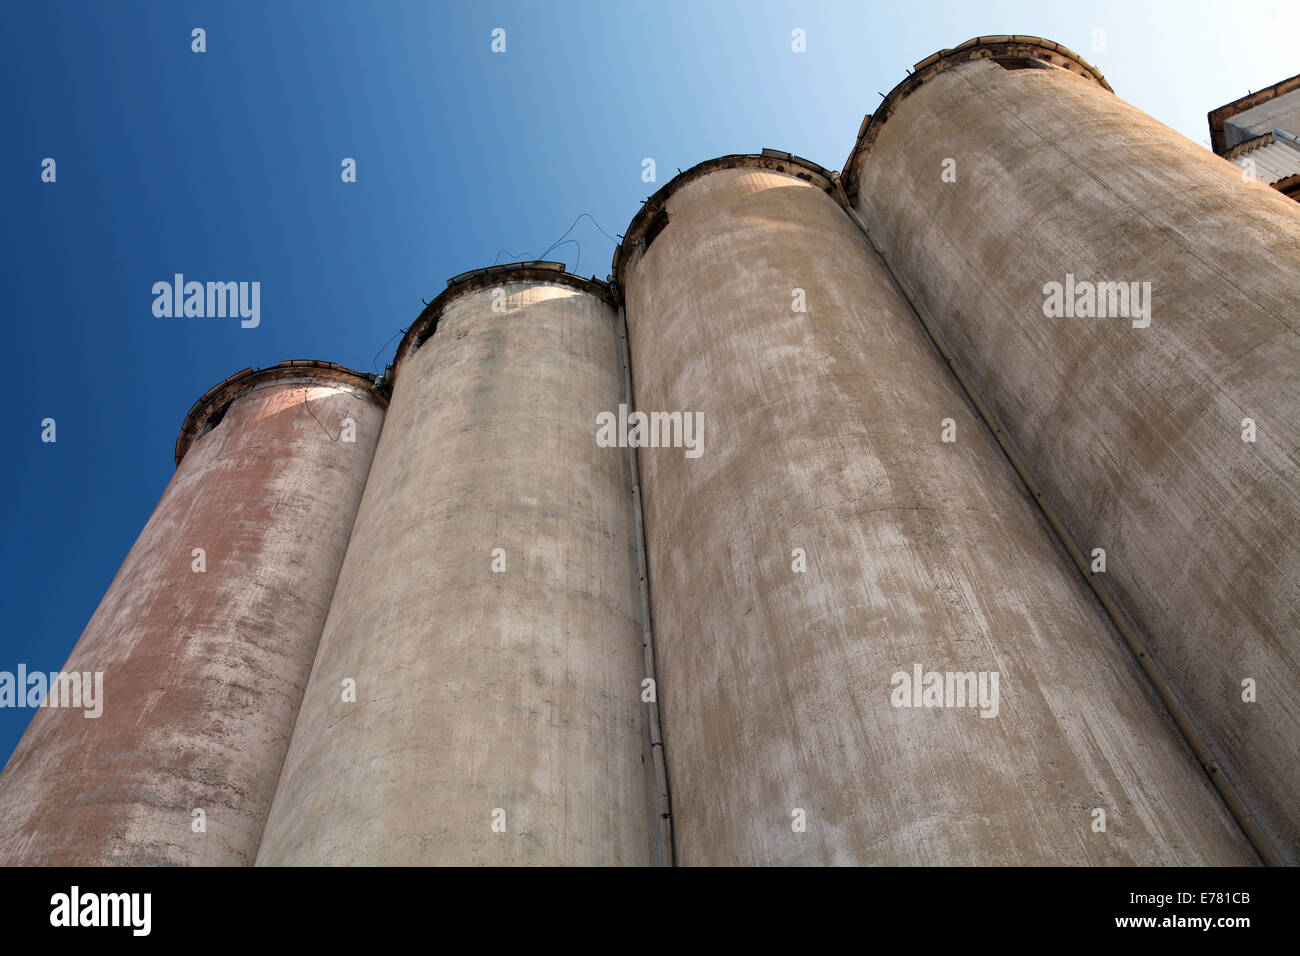 Row of grain silos under deep blue sky Stock Photo